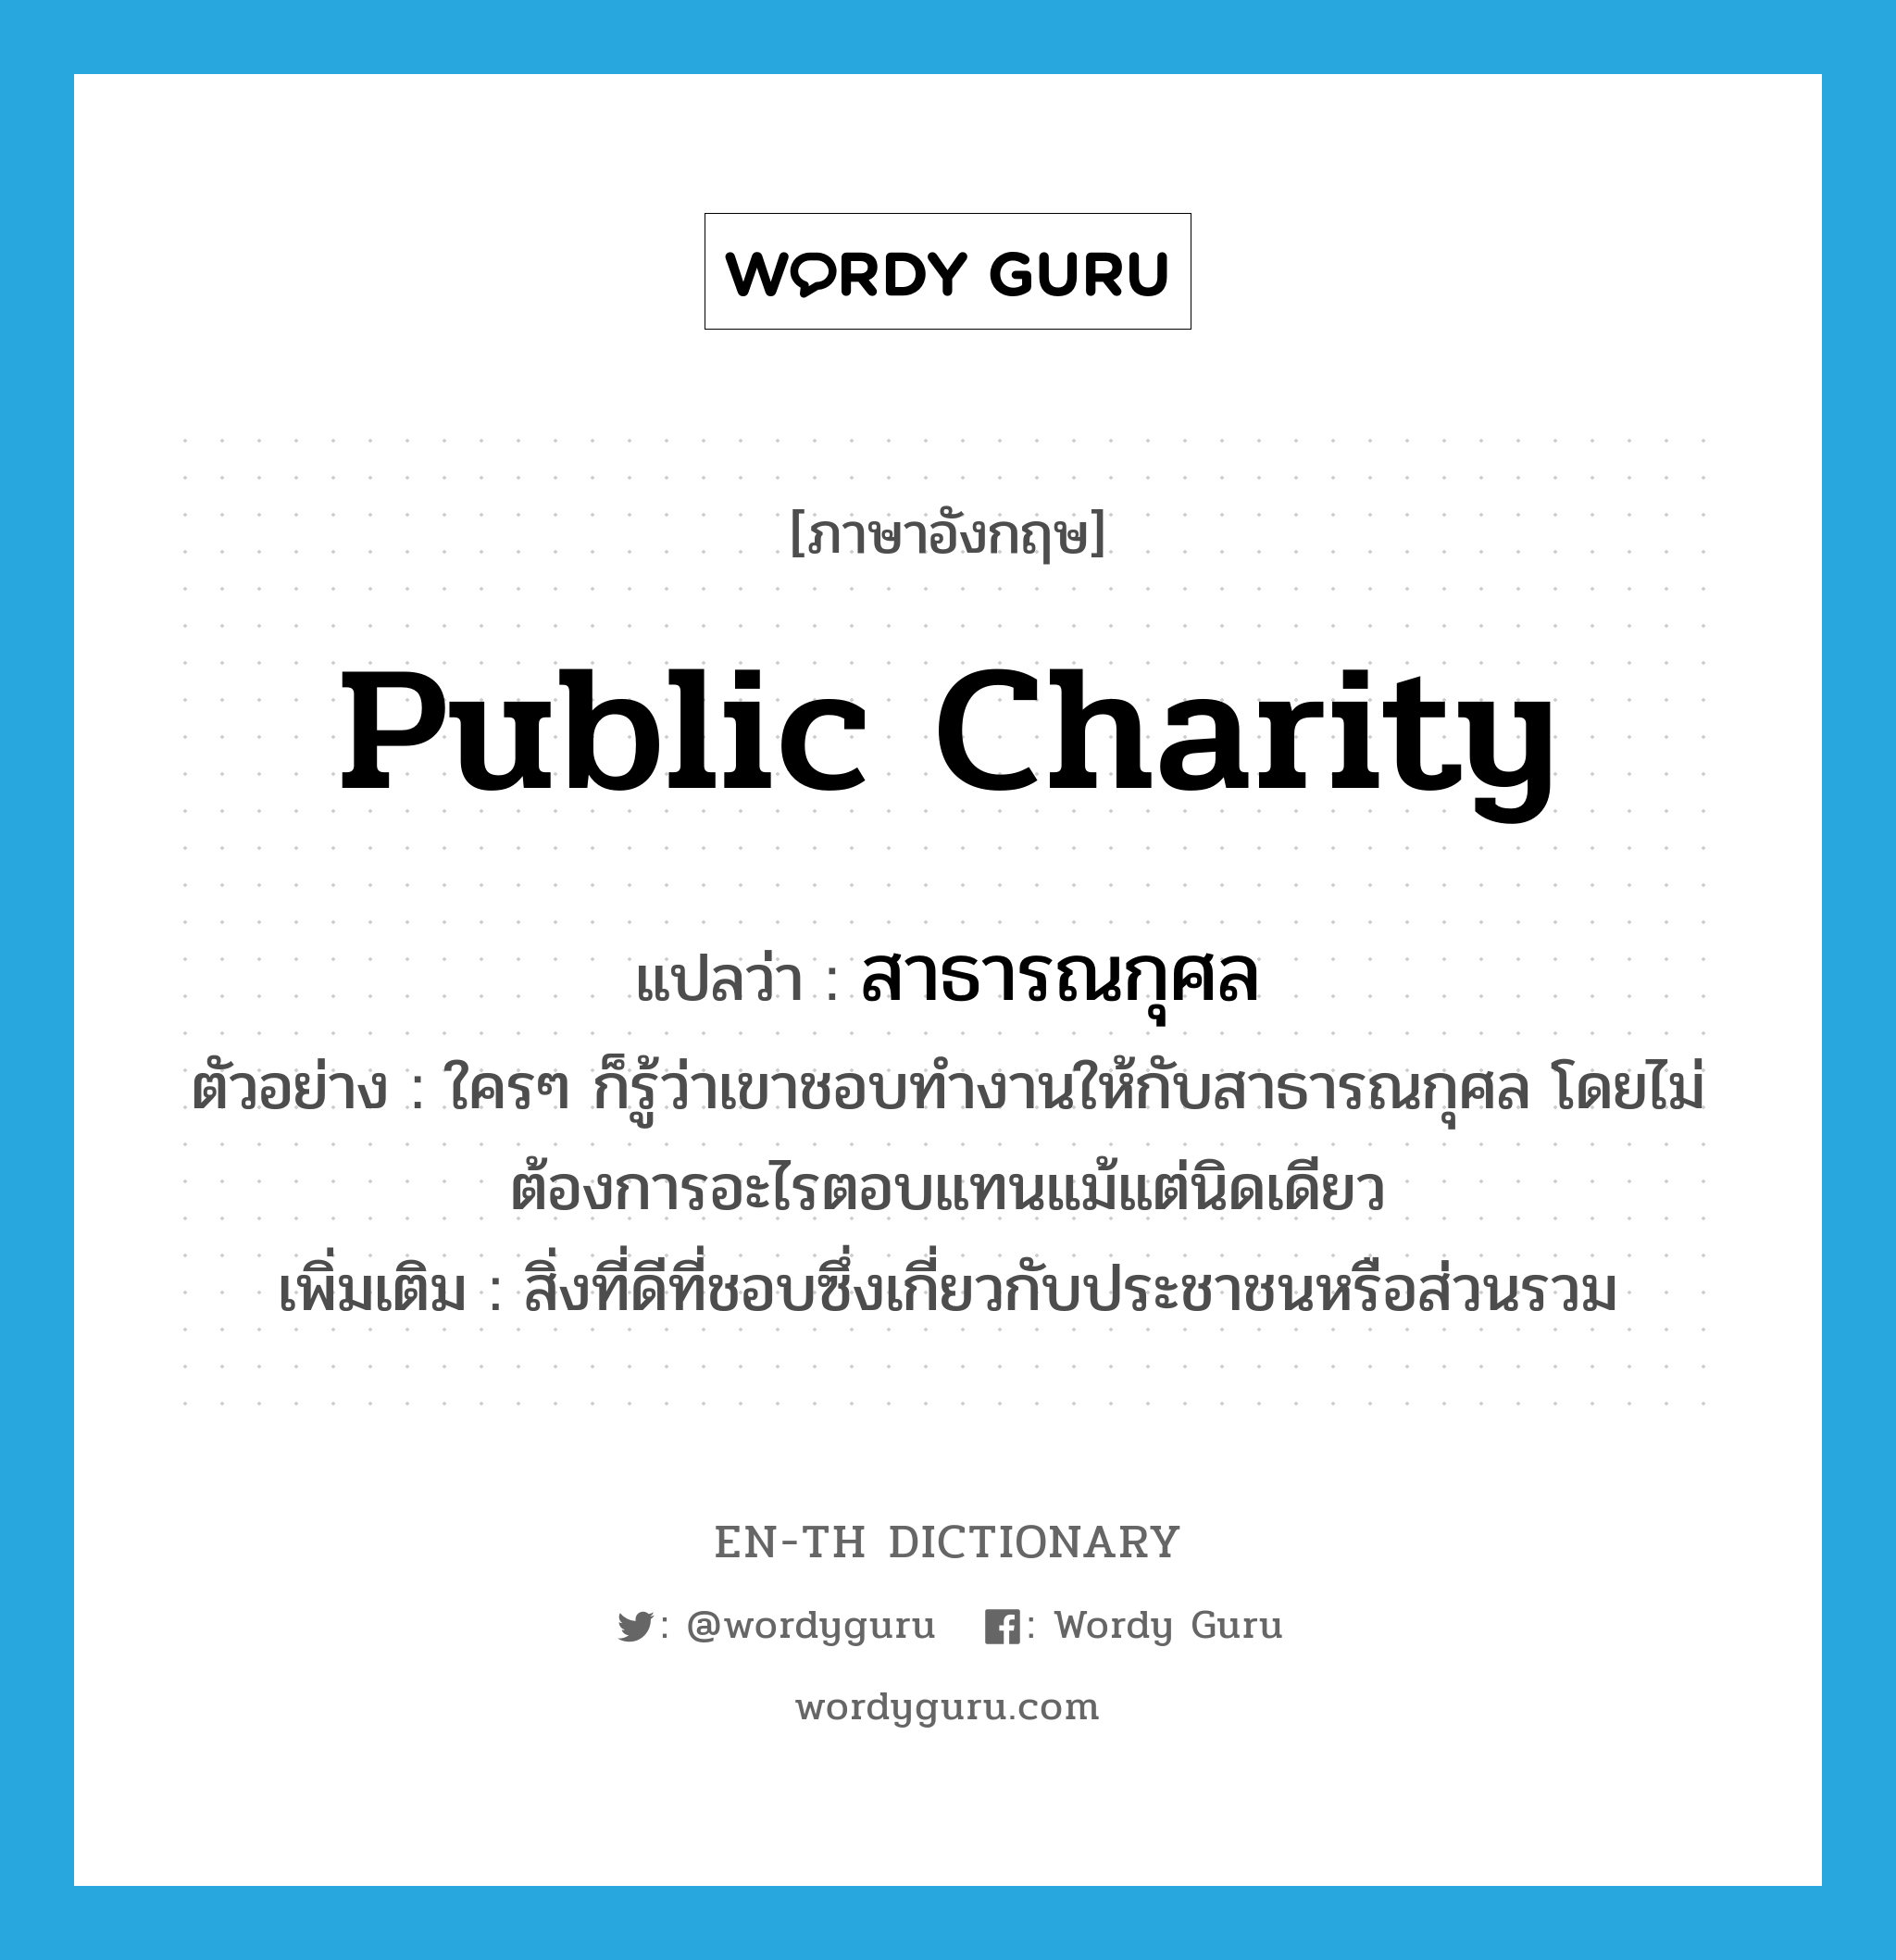 public charity แปลว่า?, คำศัพท์ภาษาอังกฤษ public charity แปลว่า สาธารณกุศล ประเภท N ตัวอย่าง ใครๆ ก็รู้ว่าเขาชอบทำงานให้กับสาธารณกุศล โดยไม่ต้องการอะไรตอบแทนแม้แต่นิดเดียว เพิ่มเติม สิ่งที่ดีที่ชอบซึ่งเกี่ยวกับประชาชนหรือส่วนรวม หมวด N